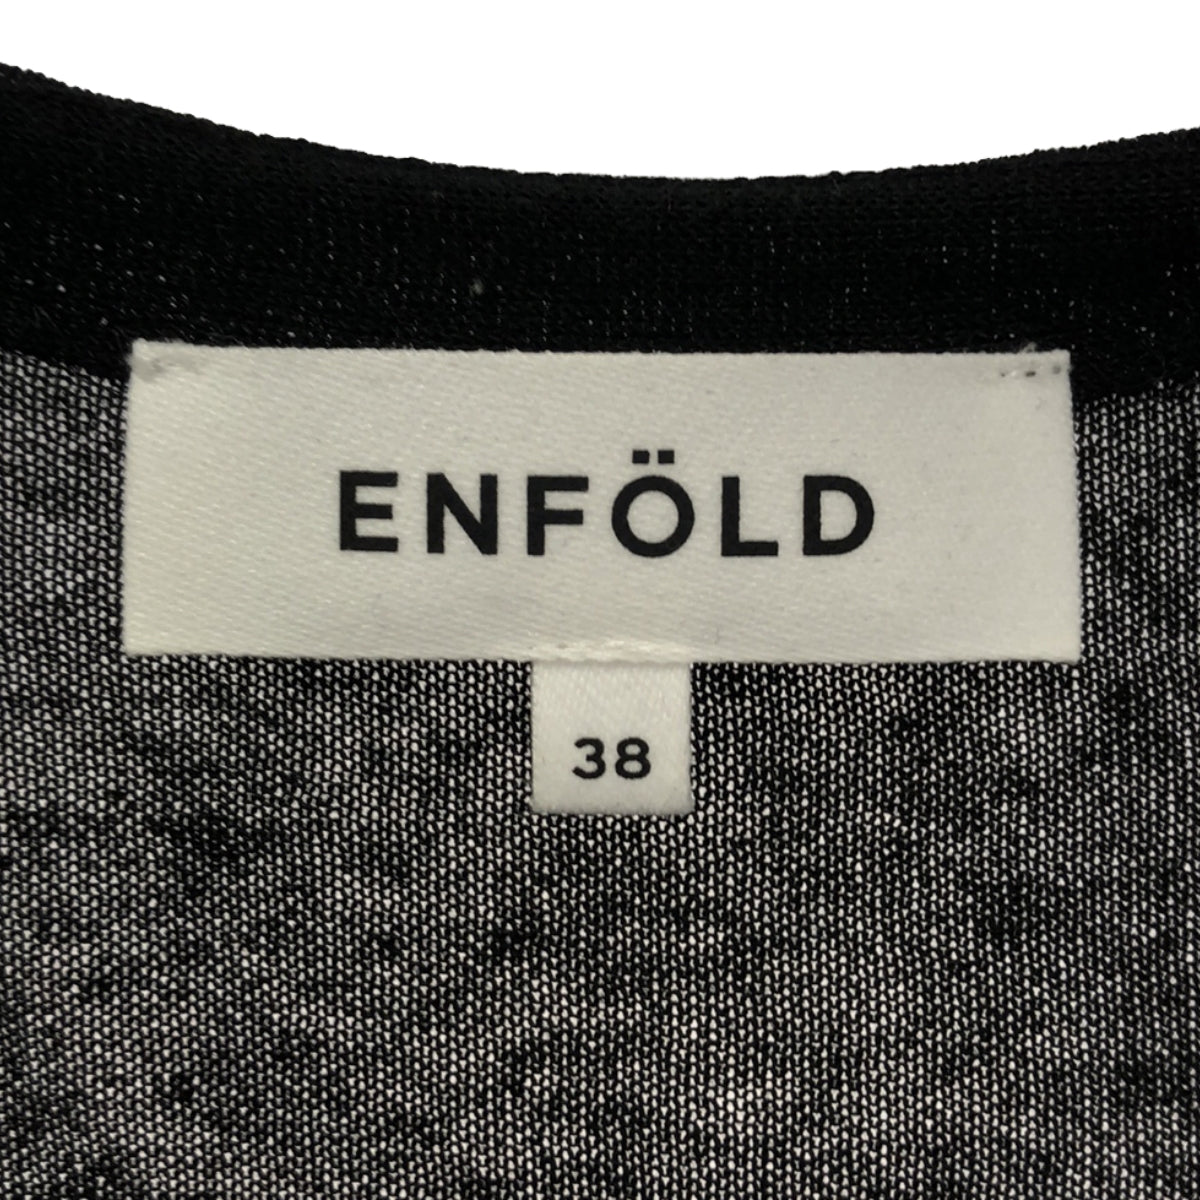 ENFOLD / エンフォルド | C/LI Blend Long Cardigan ロングカーディガン | 38 | レディース